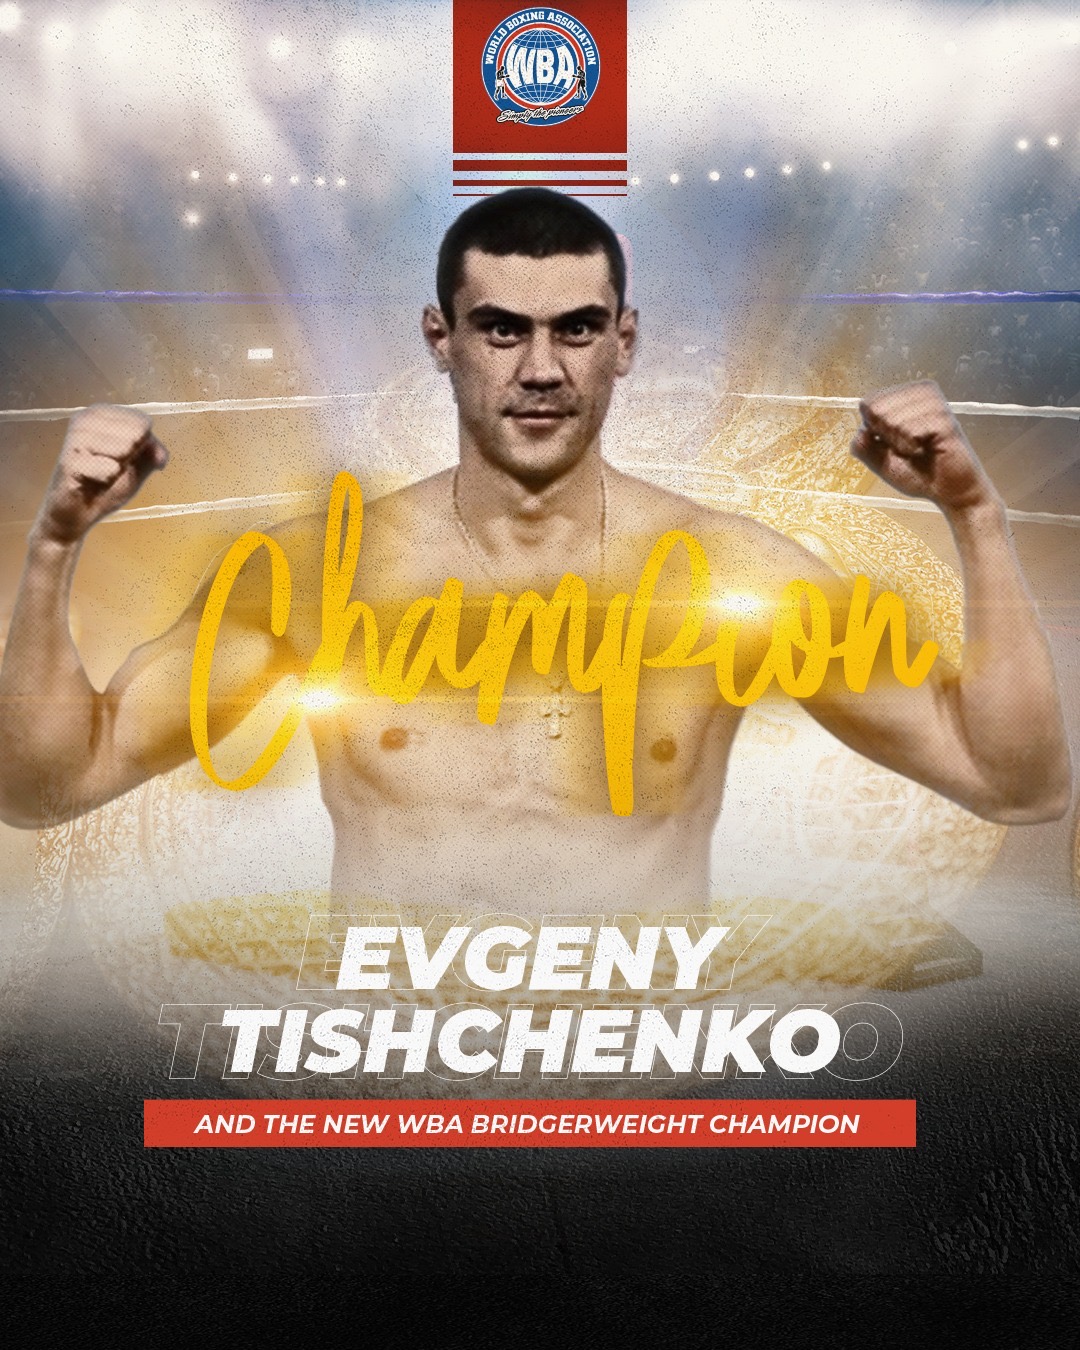 Tishchenko is first WBA bridgerweight champion